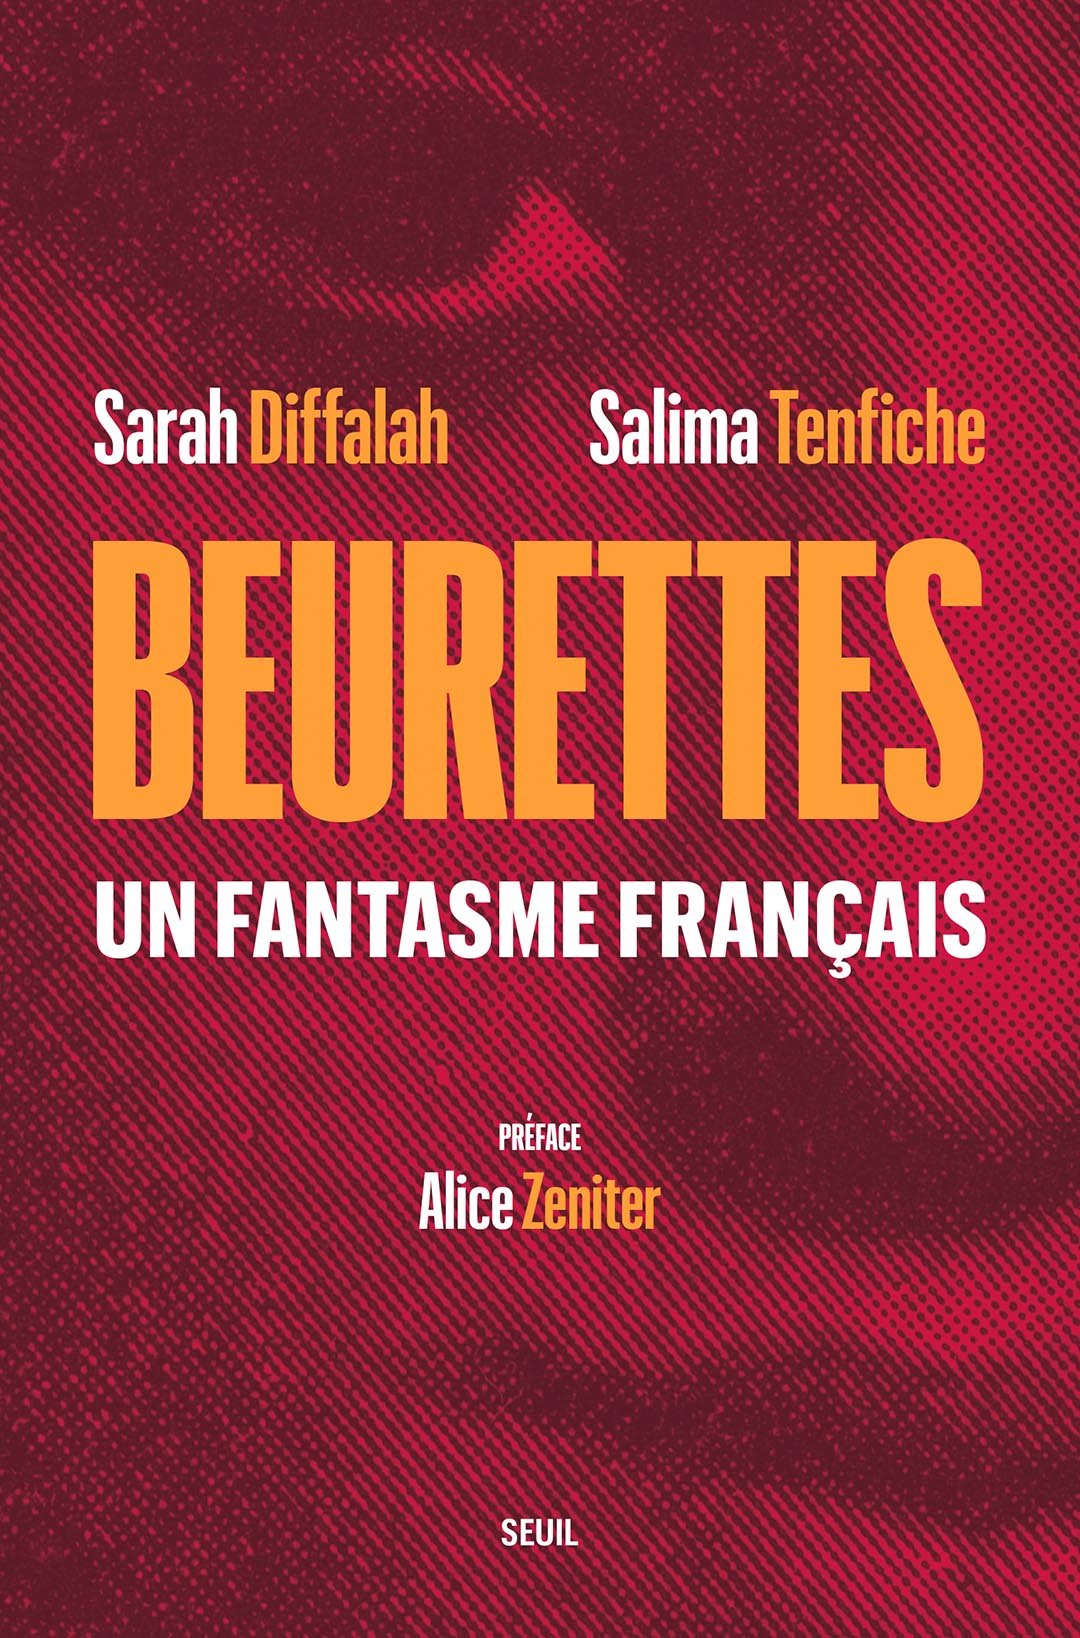 « Beurettes, un fantasme français » est sorti le 6 mai 2021 (320 pages, 21,5 €). &copy; Éditions du Seuil